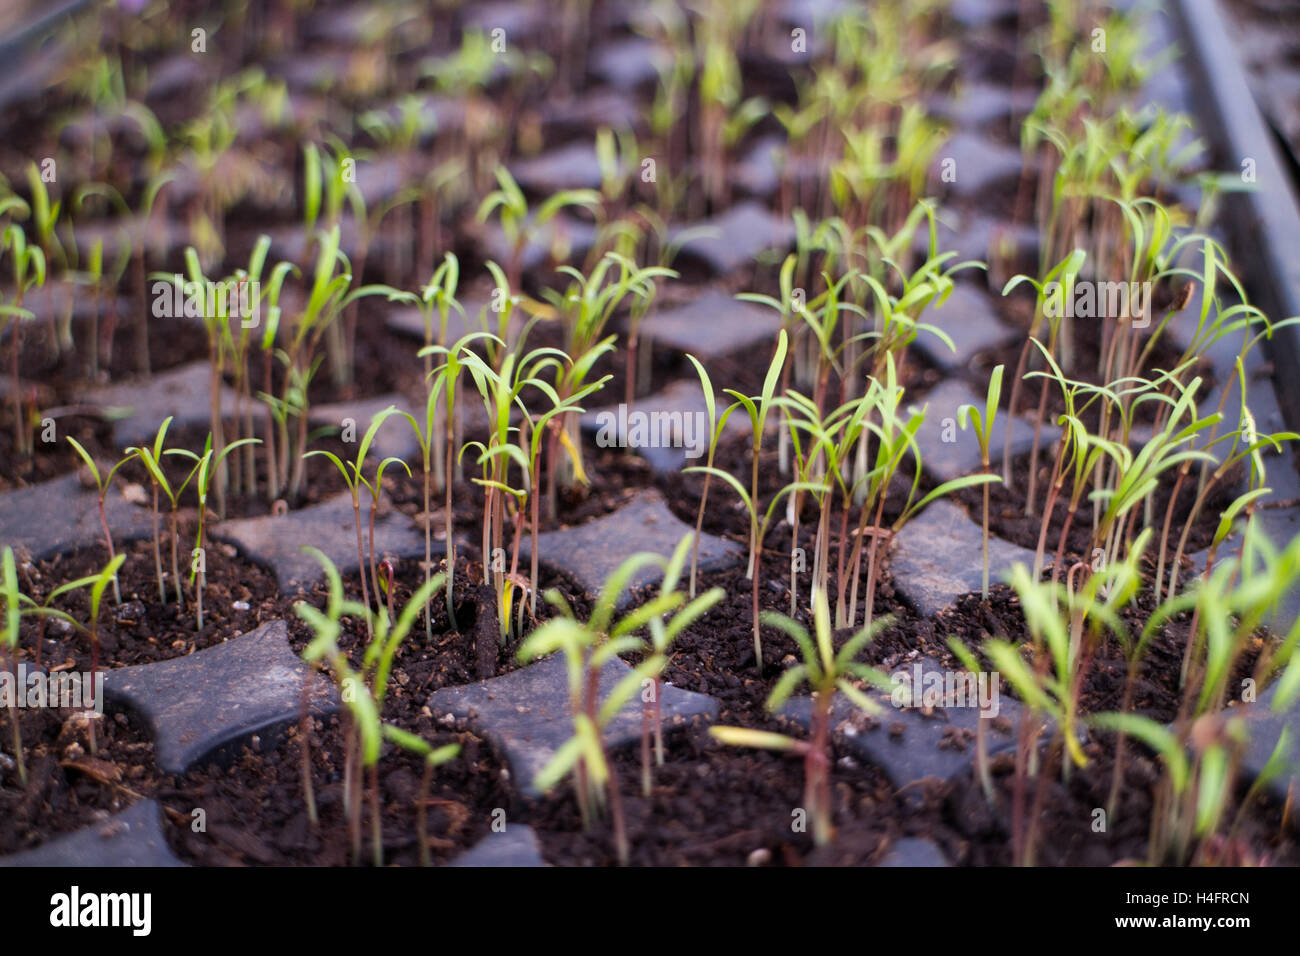 Thin small green transplants, farm inspired Stock Photo